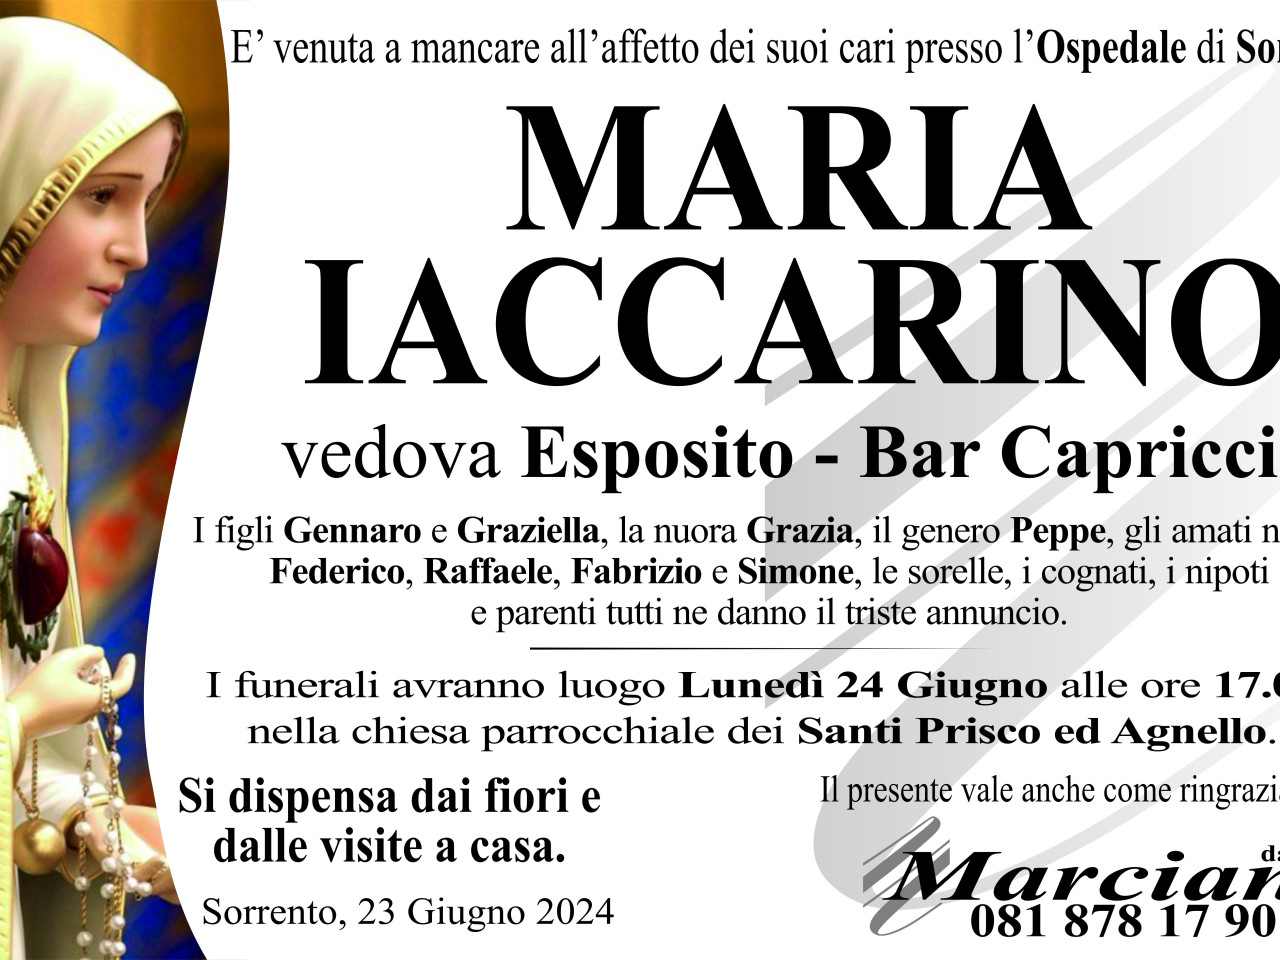 Maria Iaccarino